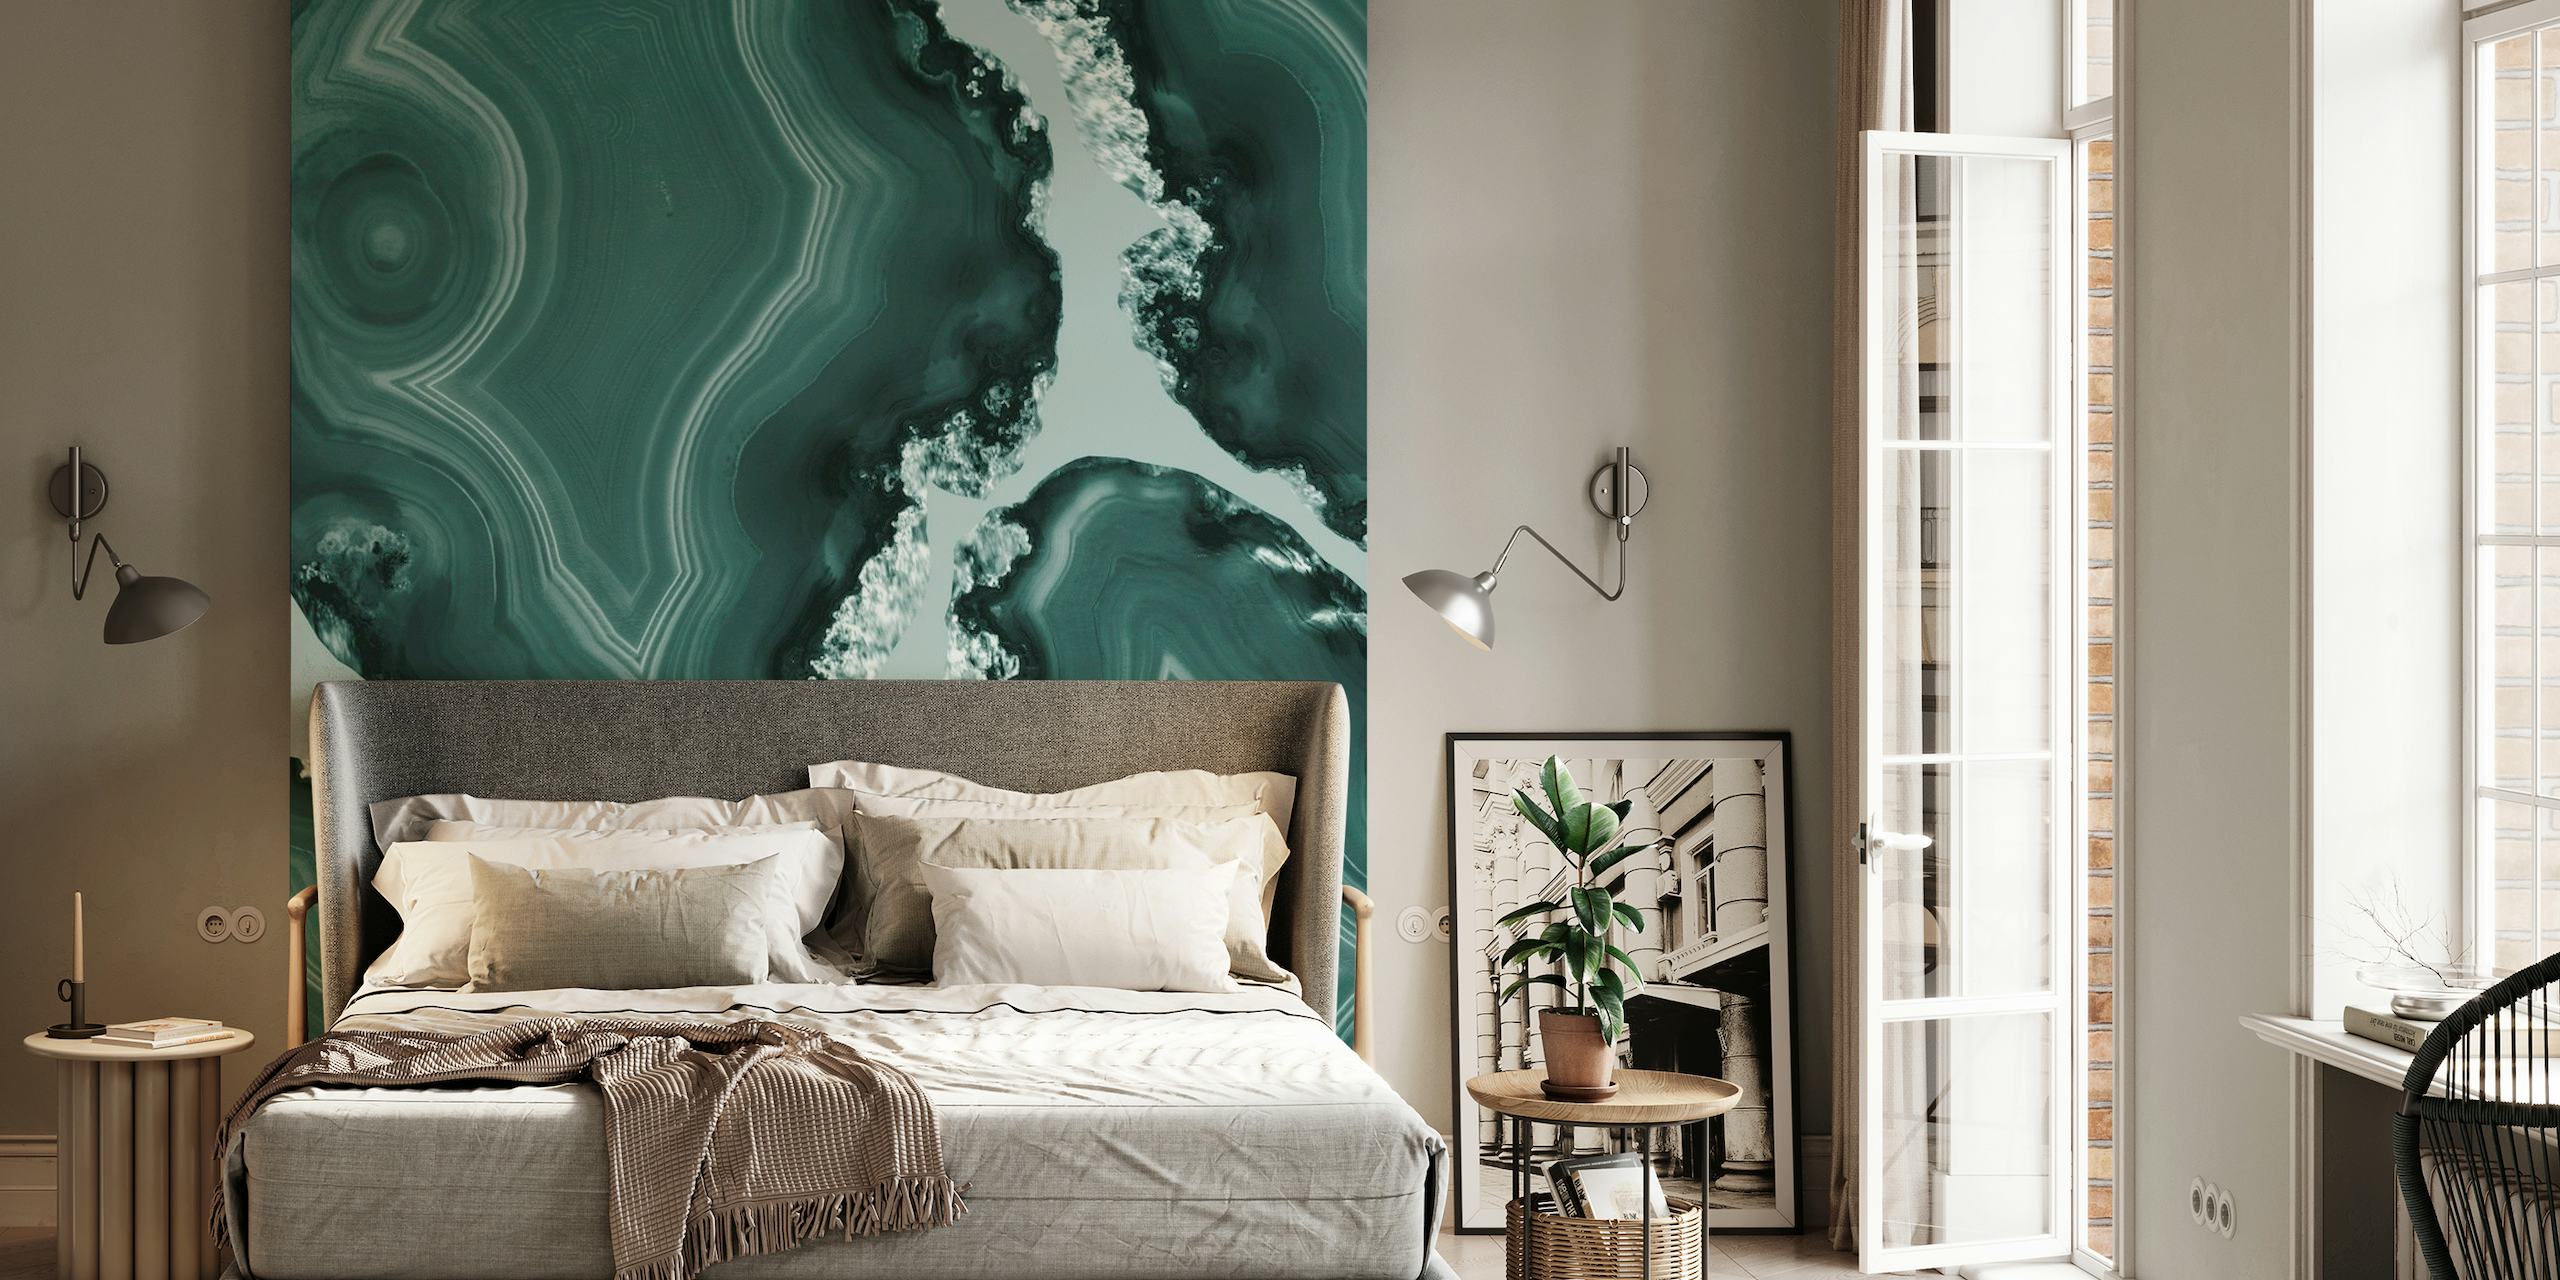 Wandbild mit blaugrünem Achatmuster, das Wirbel aus Blaugrün und Aquamarin zeigt, die an Naturstein erinnern